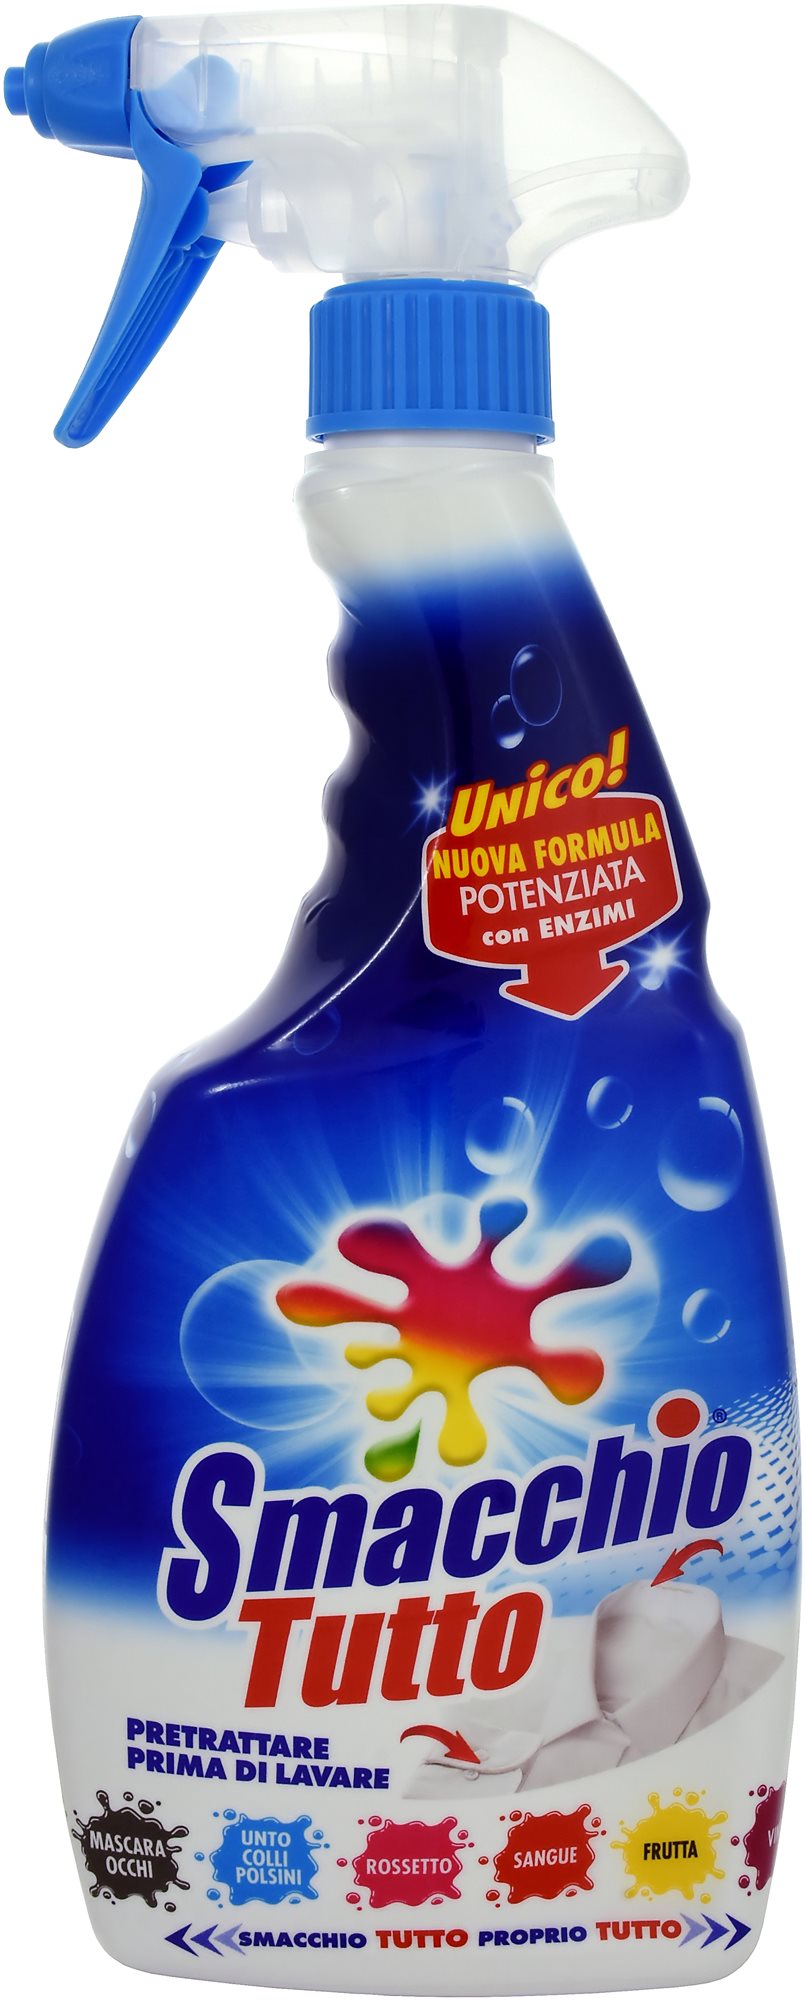 NEFlEK Smacchio Tutto Spray 500 ml